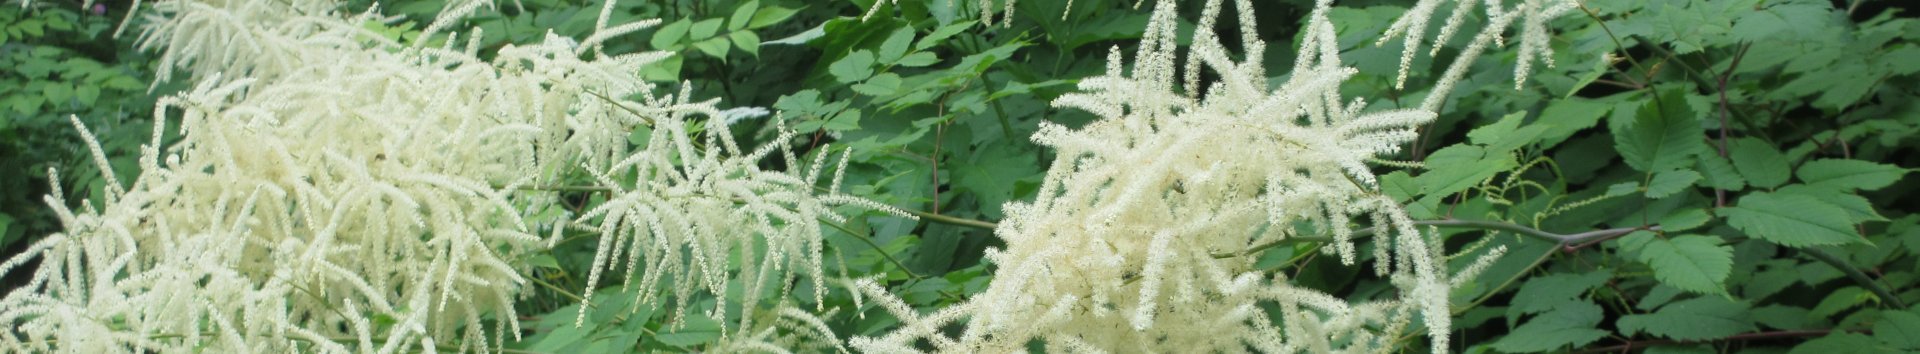 Weiße blühende Pflanze in Großaufnahme